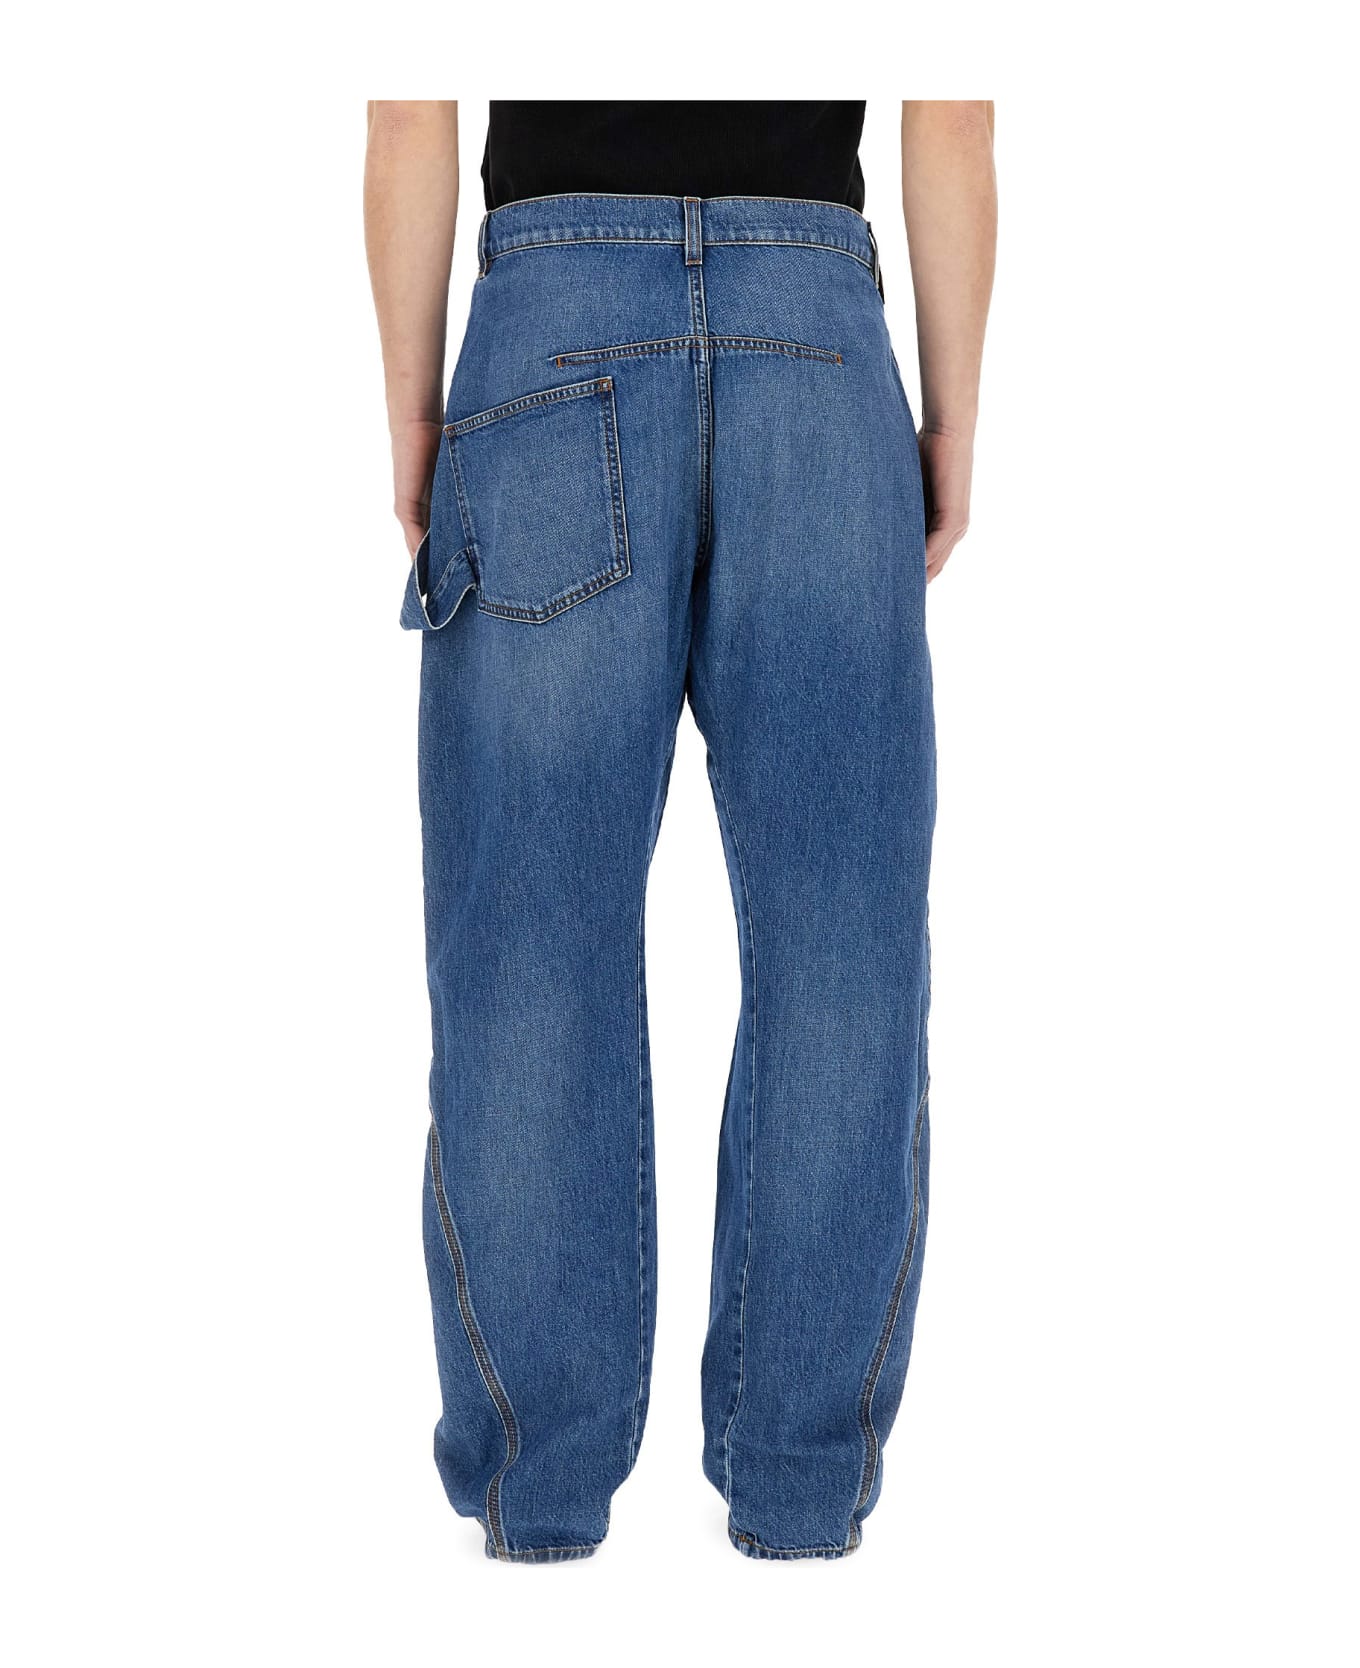 J.W. Anderson Jeans Twisted Workwear - BLU